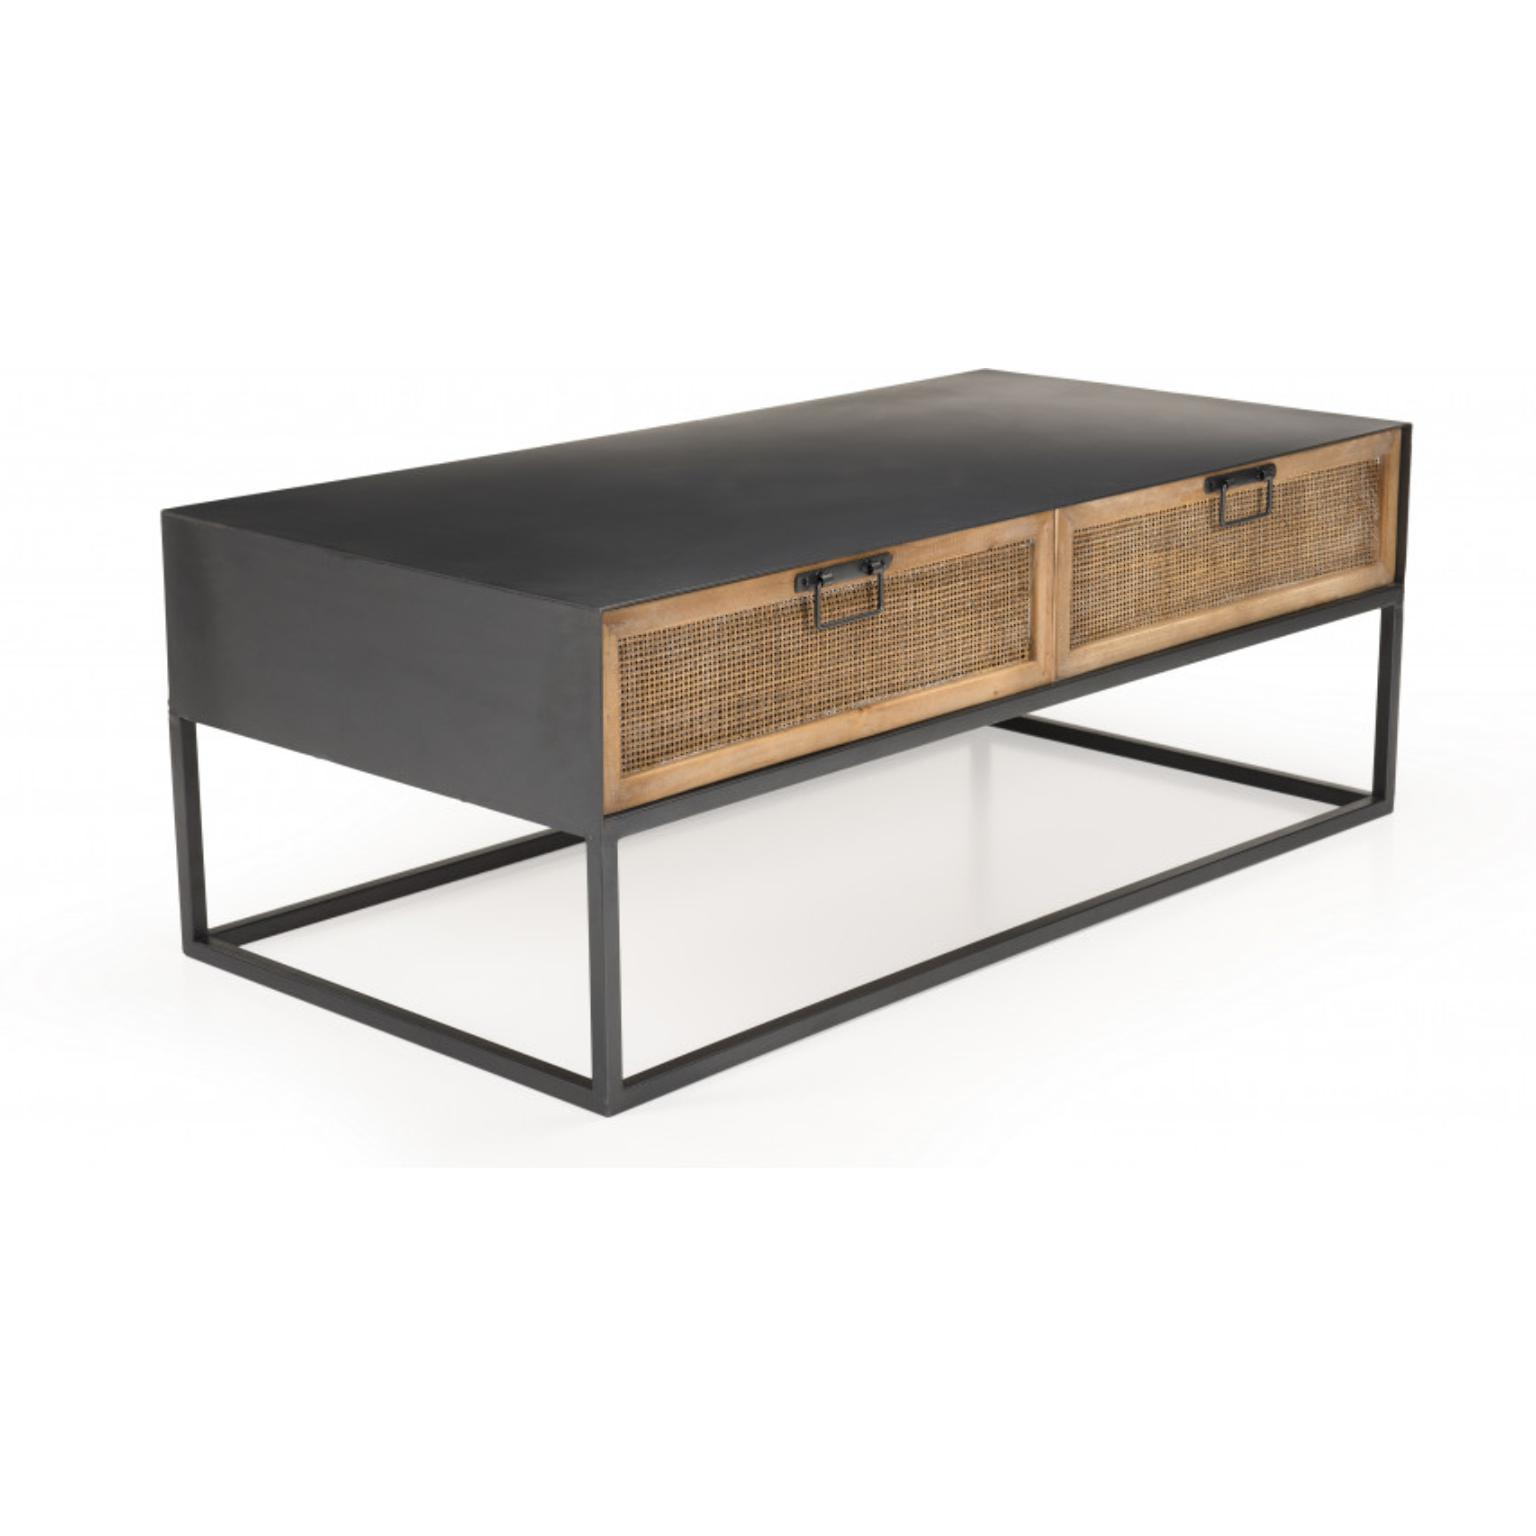 DORIANE - Table basse rectangulaire noire métal 2 tiroirs cannage naturel